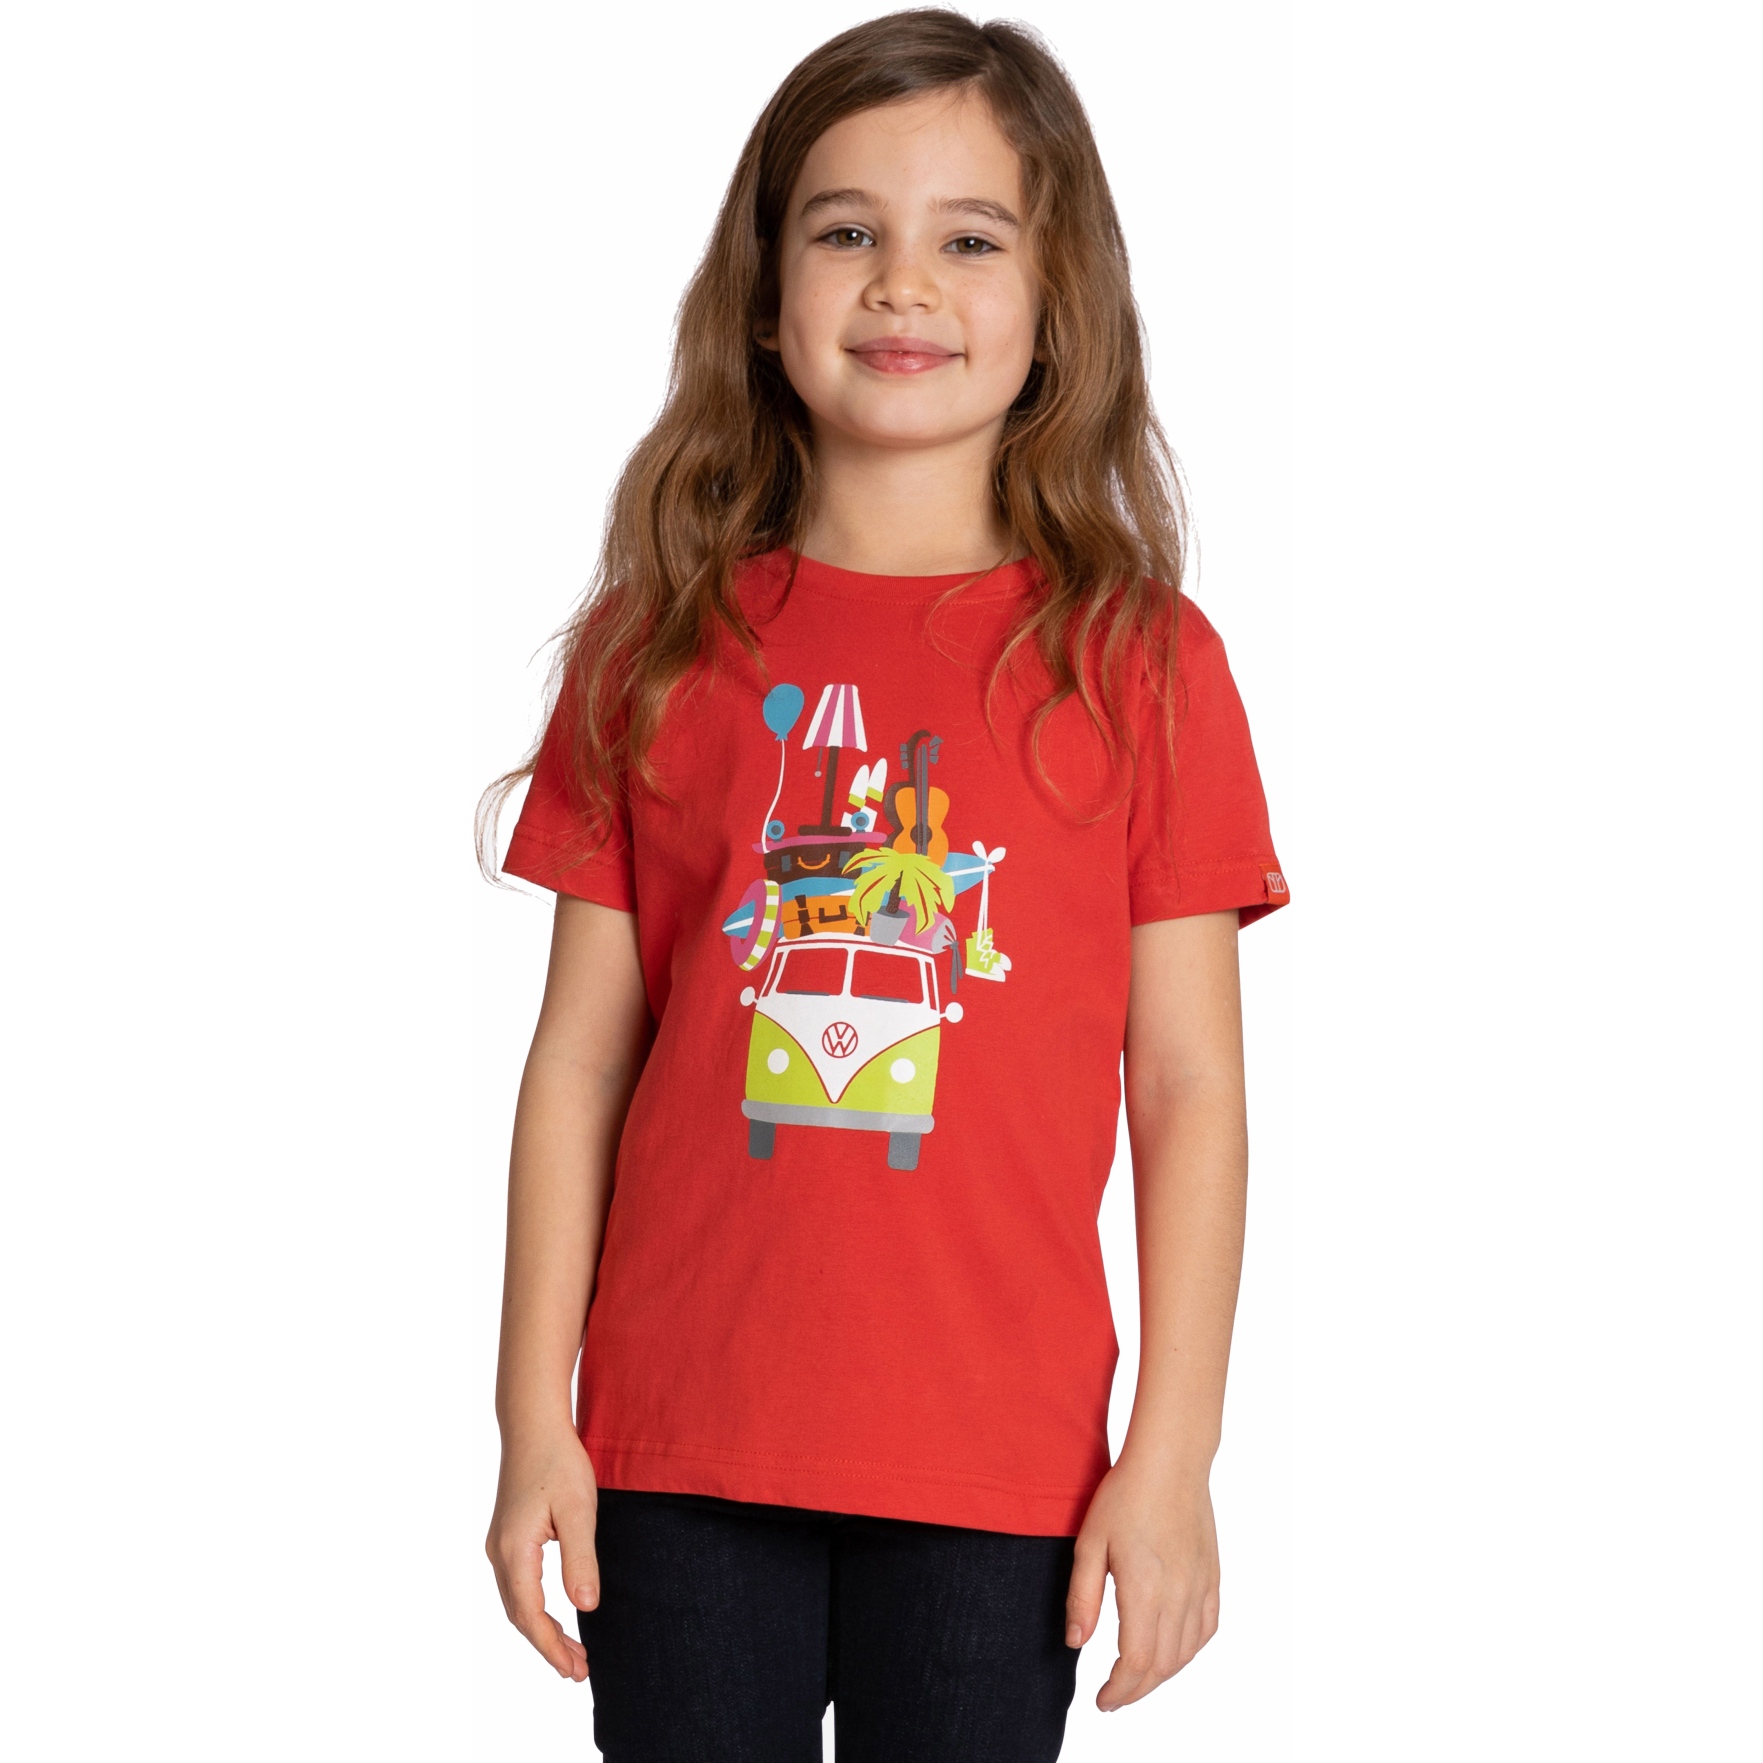 Produktbild von Elkline HUCKEPACK T-Shirt Kinder - Lizensiert von VW - mandarin